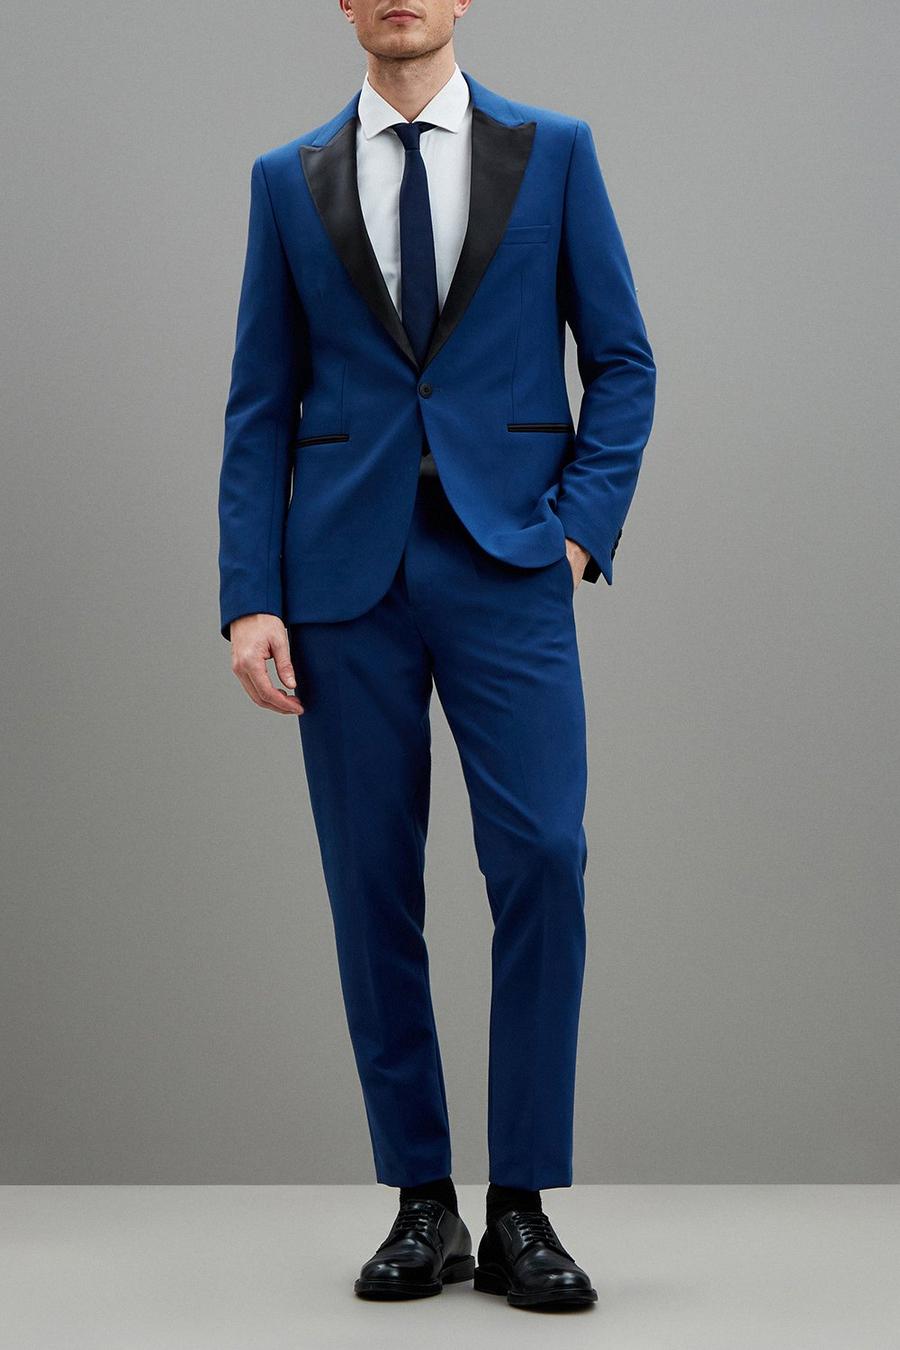 Black/Orange Single C&A Tie/accessory discount 71% MEN FASHION Suits & Sets Print 